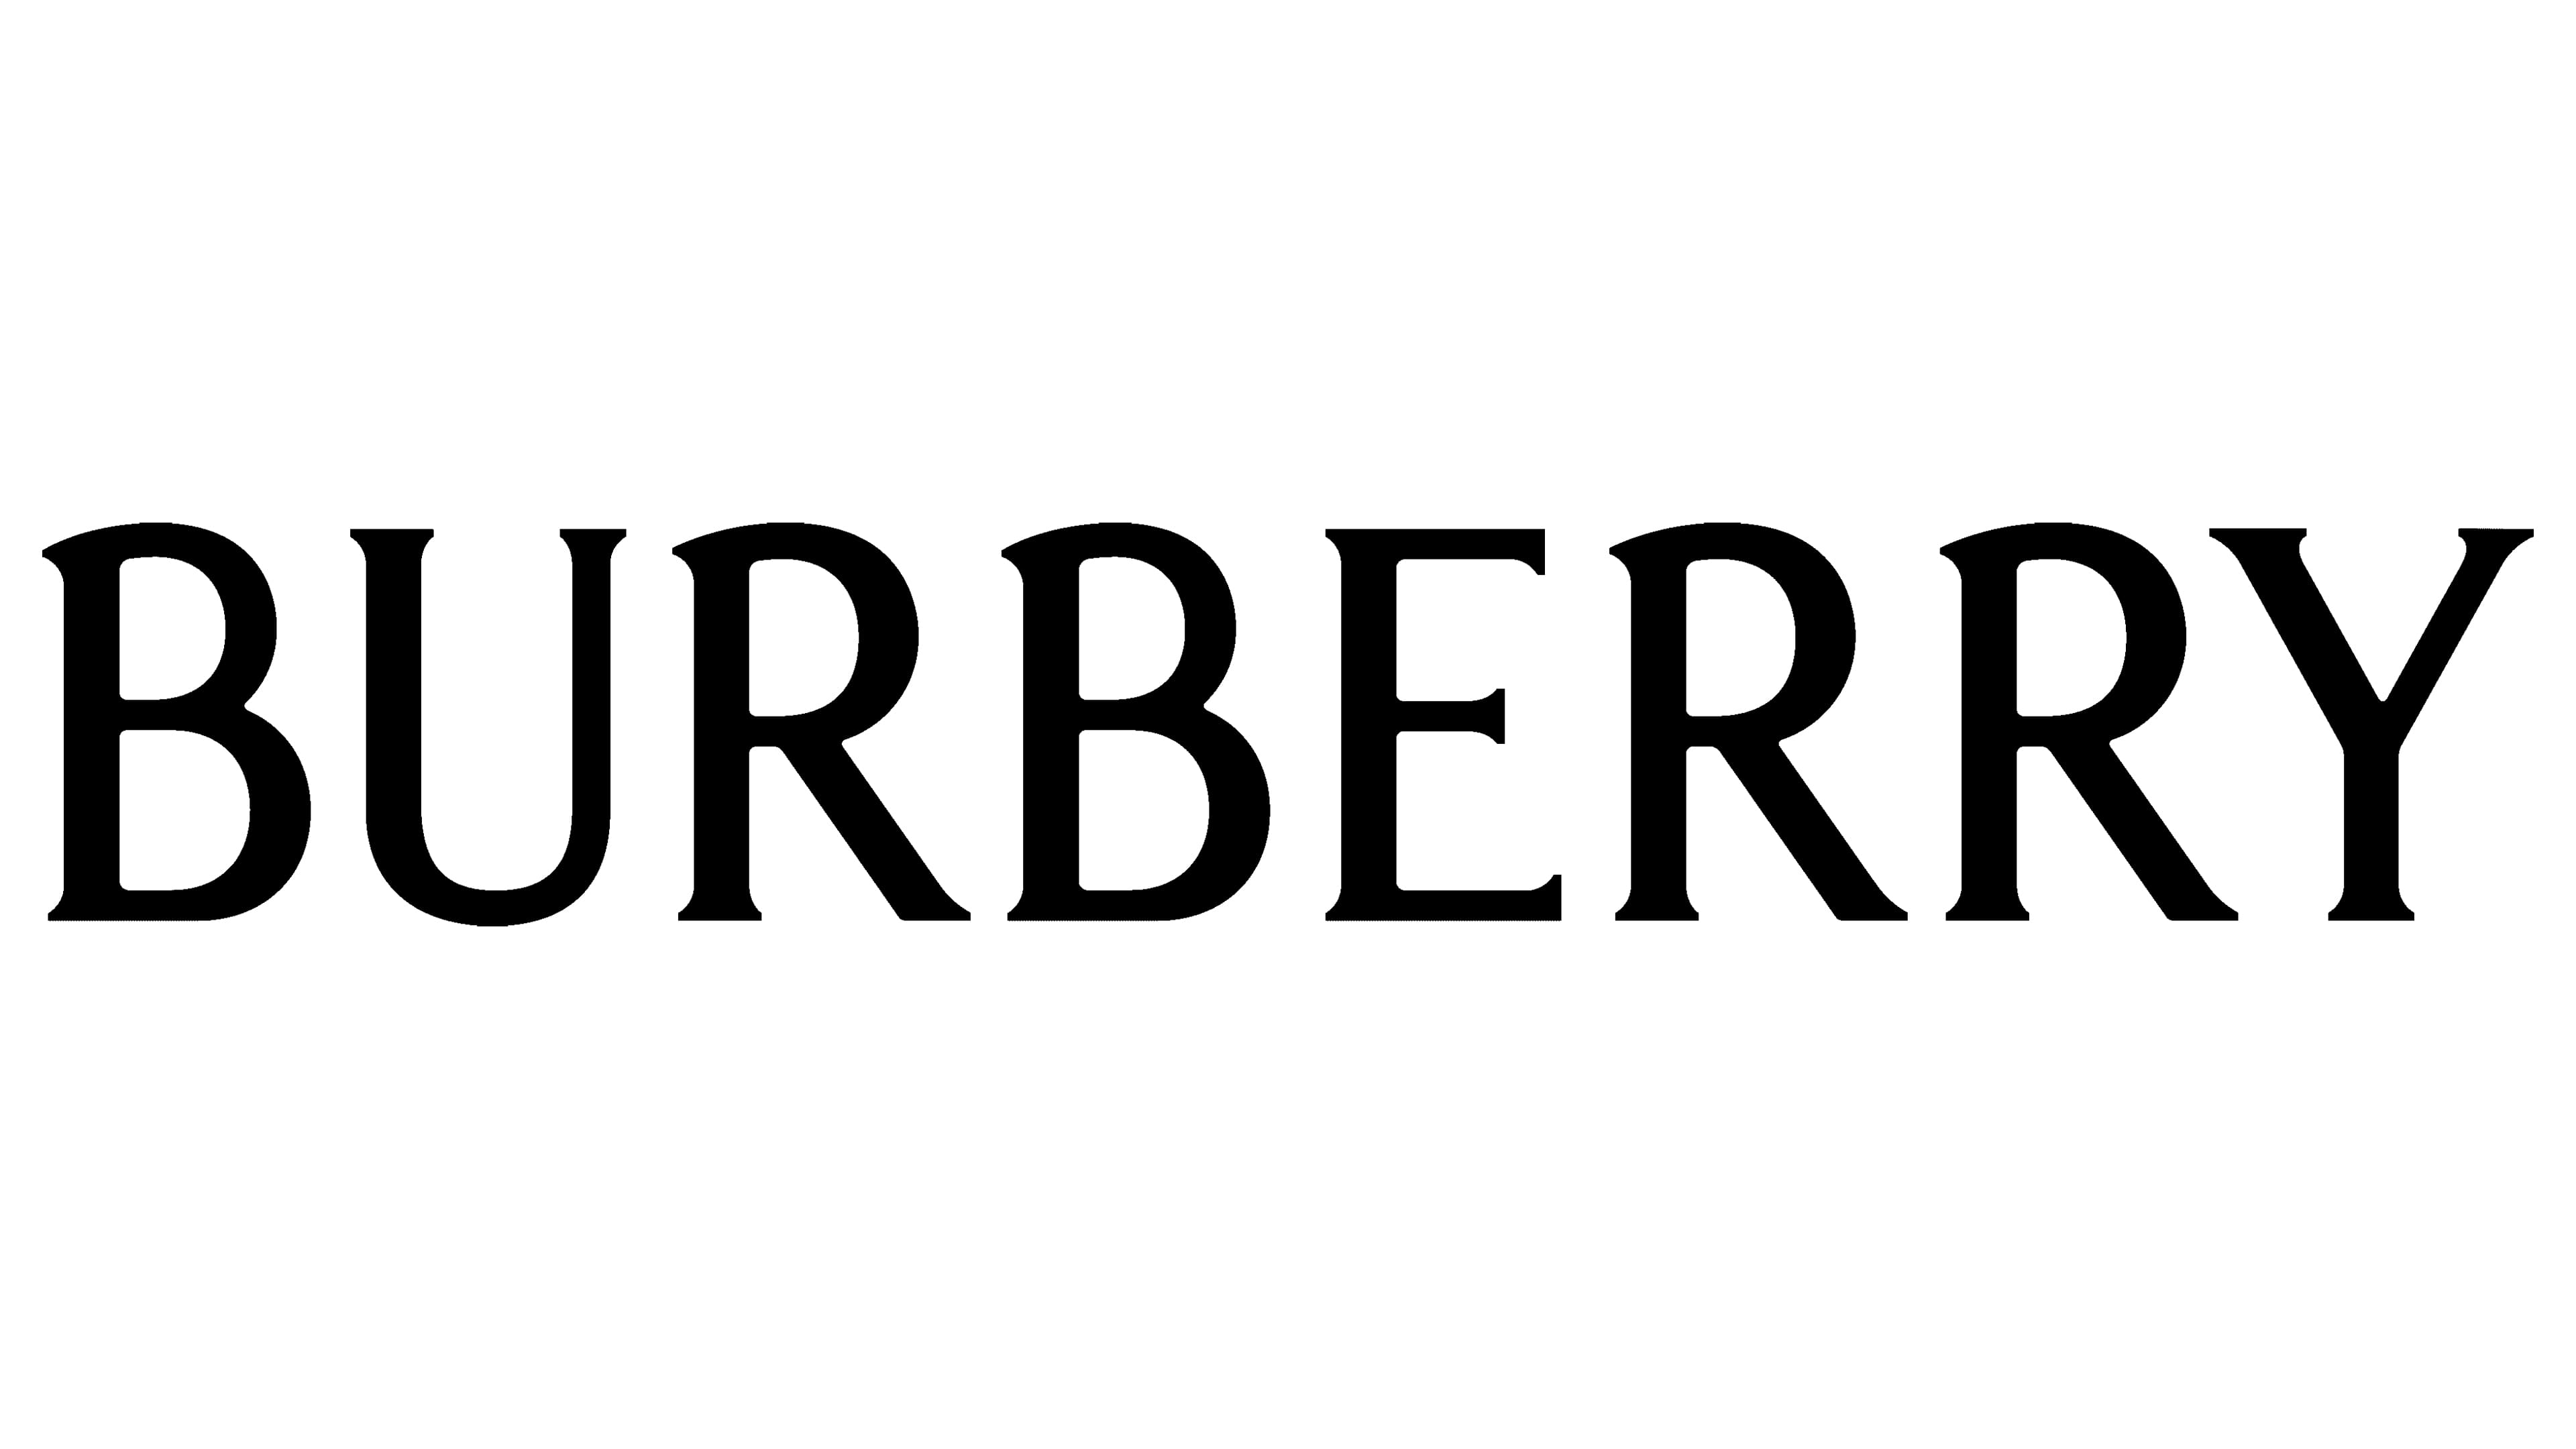 Burberry logo, ý nghĩa, lịch sử, thương hiệu 2024 sẽ giúp bạn hiểu rõ hơn về một trong những thương hiệu thời trang hàng đầu thế giới. Với bề dày lịch sử và ý nghĩa đằng sau logo Burberry, bạn sẽ có cơ hội tìm hiểu về những giá trị mà thương hiệu này mang lại. Tìm hiểu và khám phá thế giới thời trang đầy phong cách và cá tính của Burberry!